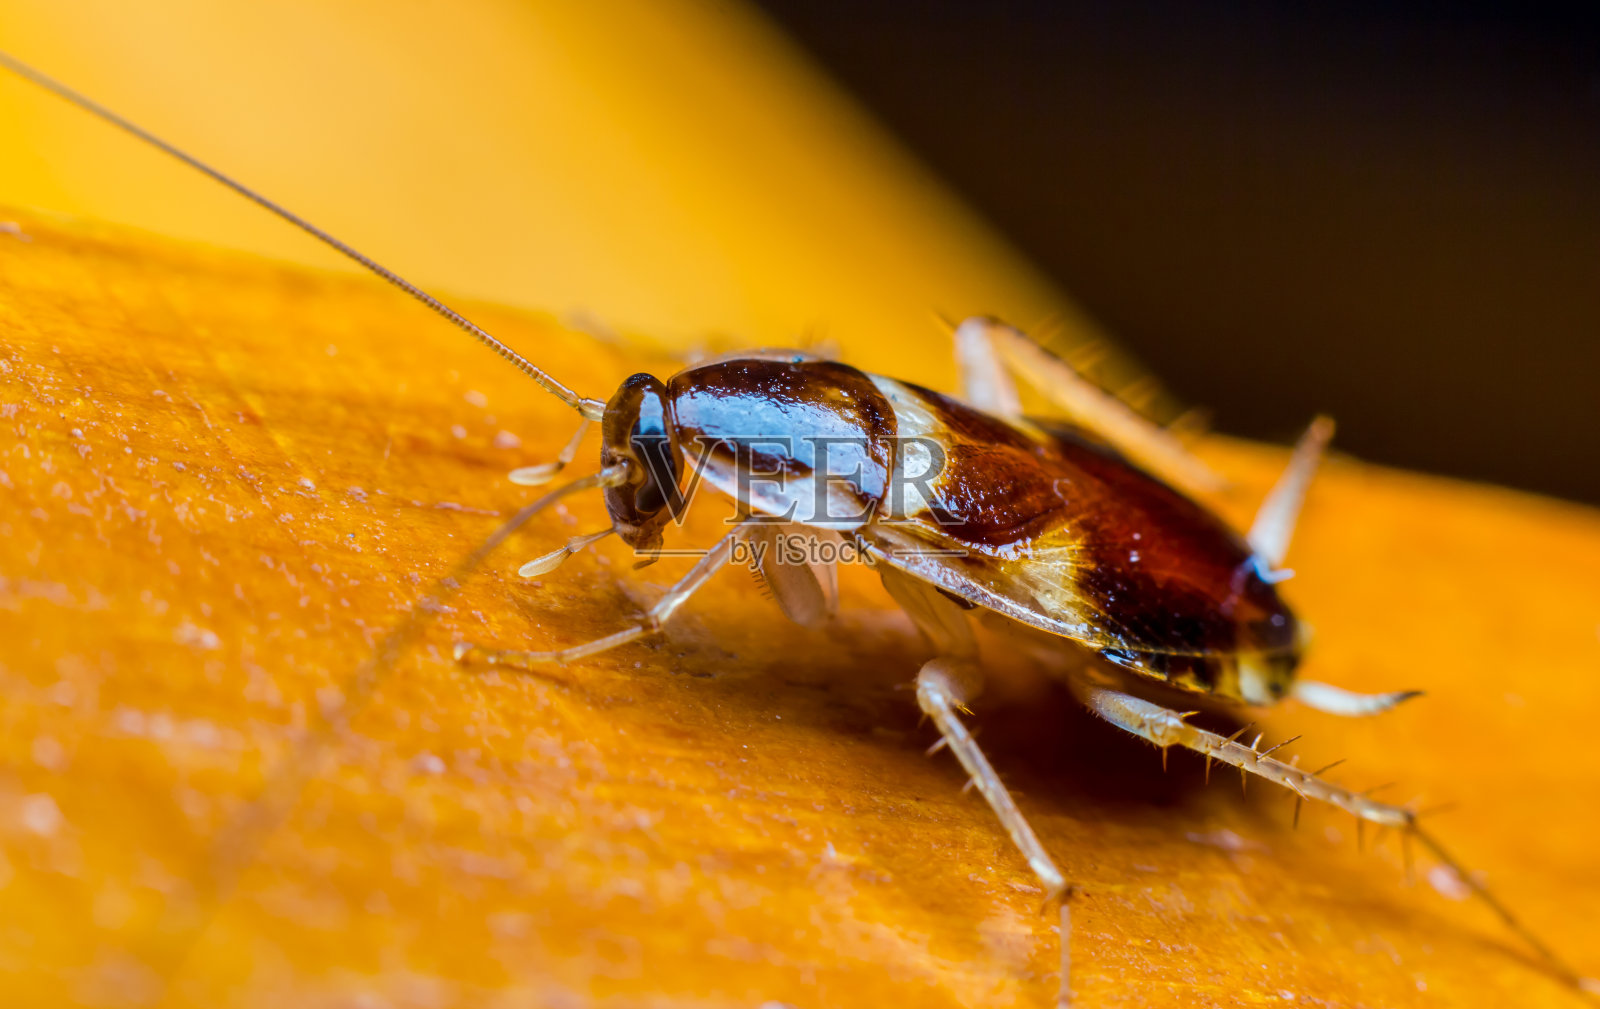 300+张最精彩的“蟑螂”图片 · 100%免费下载 · Pexels素材图片